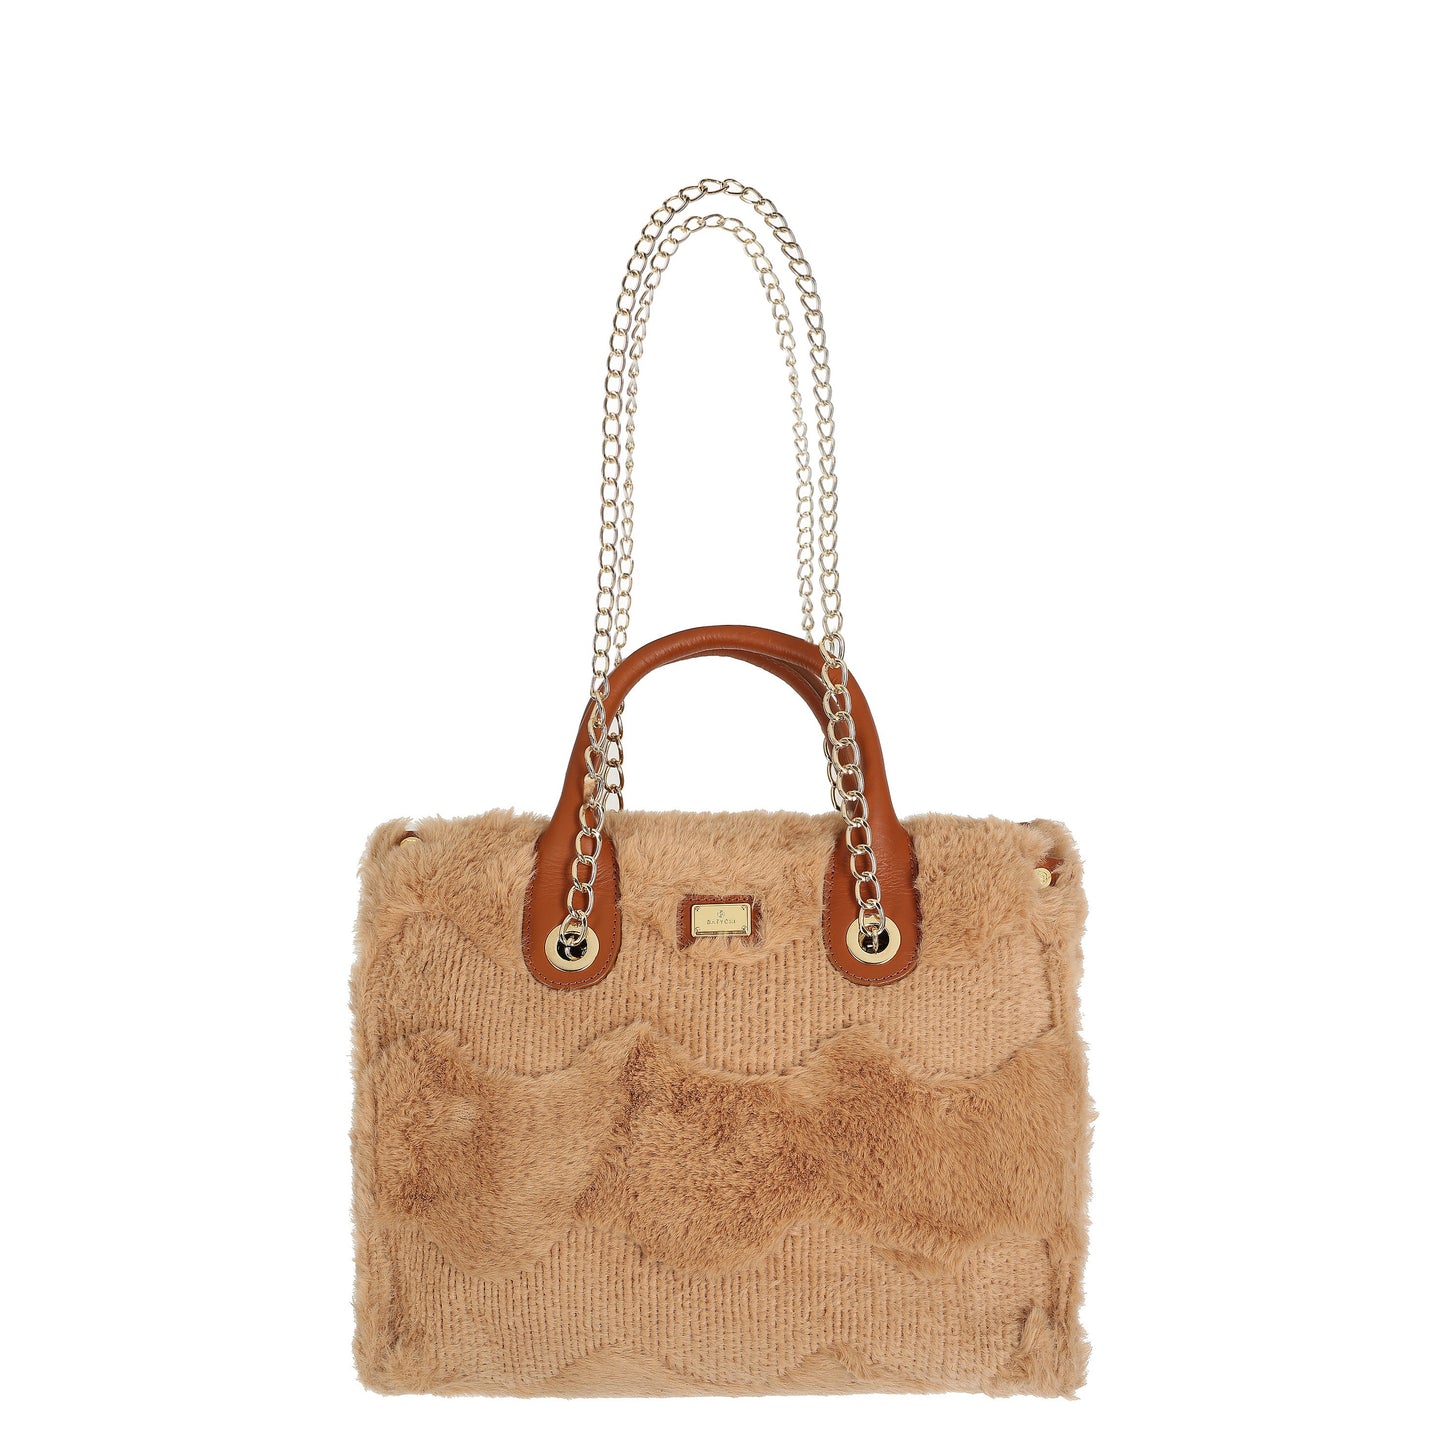 MUSSIE CAMEL women's handbag